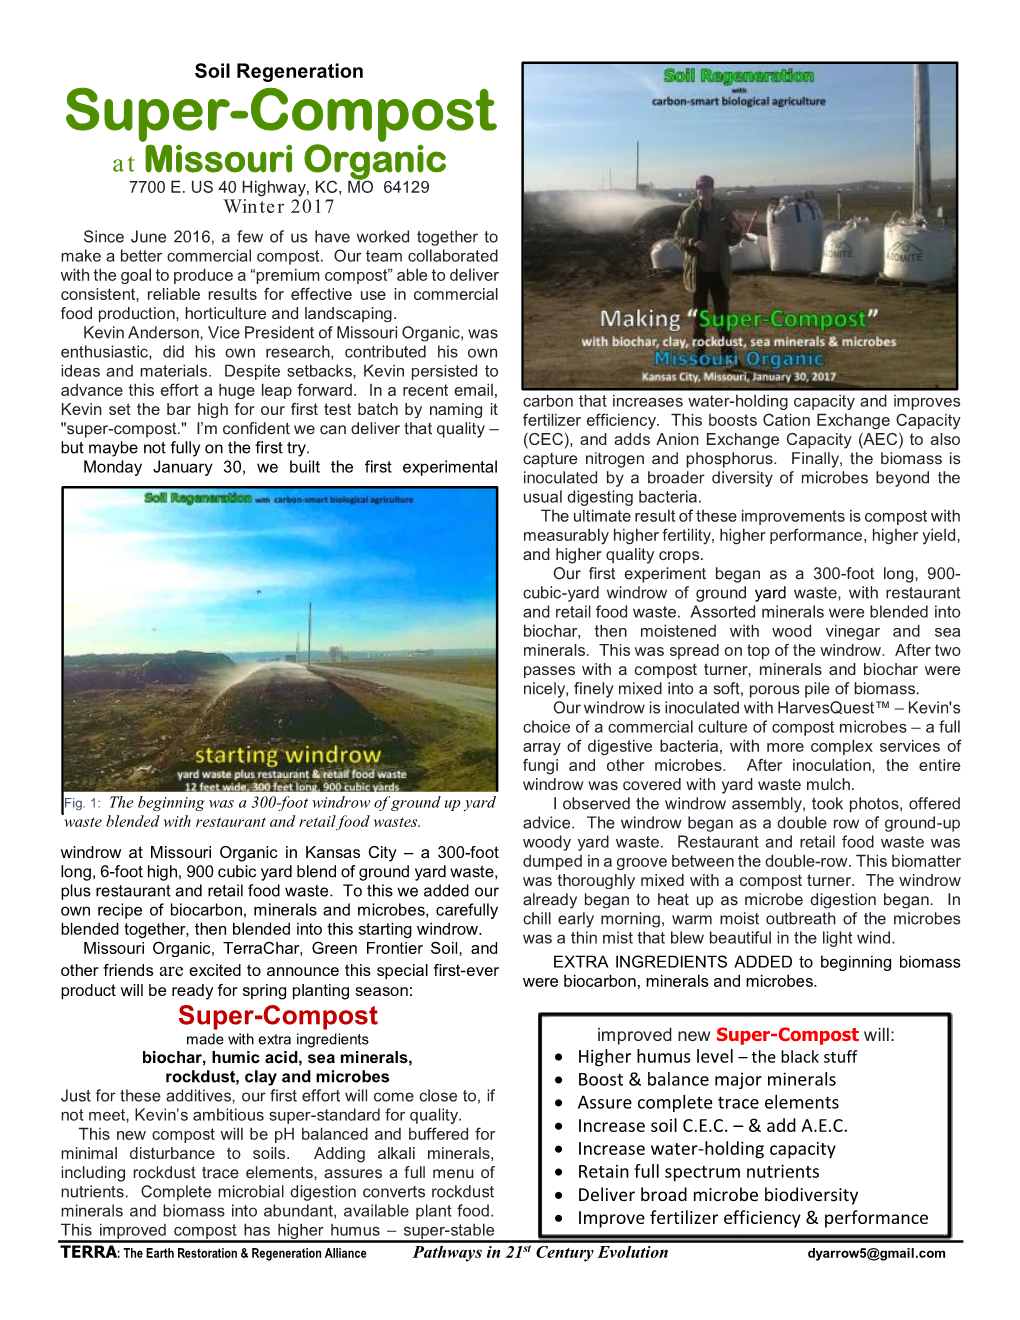 Super-Compost at Missouri Organic 7700 E